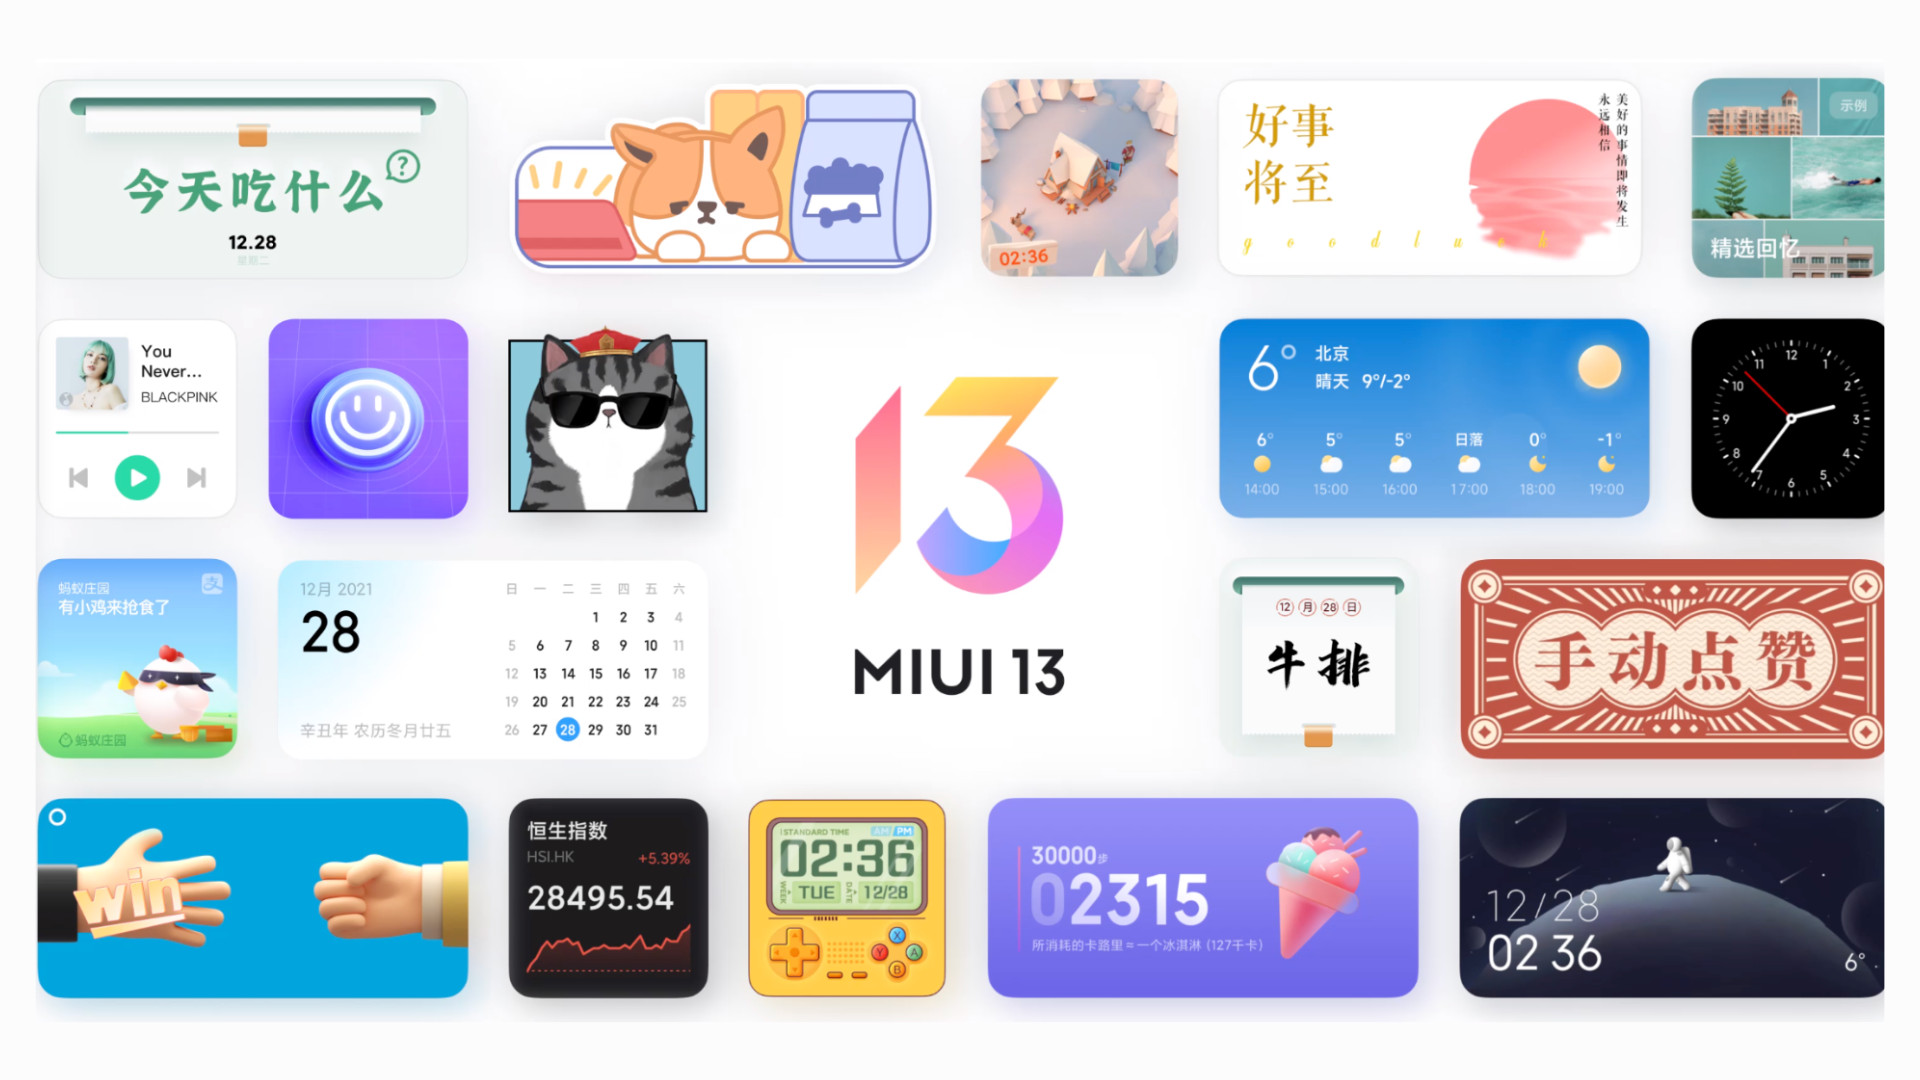 Xiaomi a ajouté le mode pur à MIUI - qu'est-ce que cela signifie